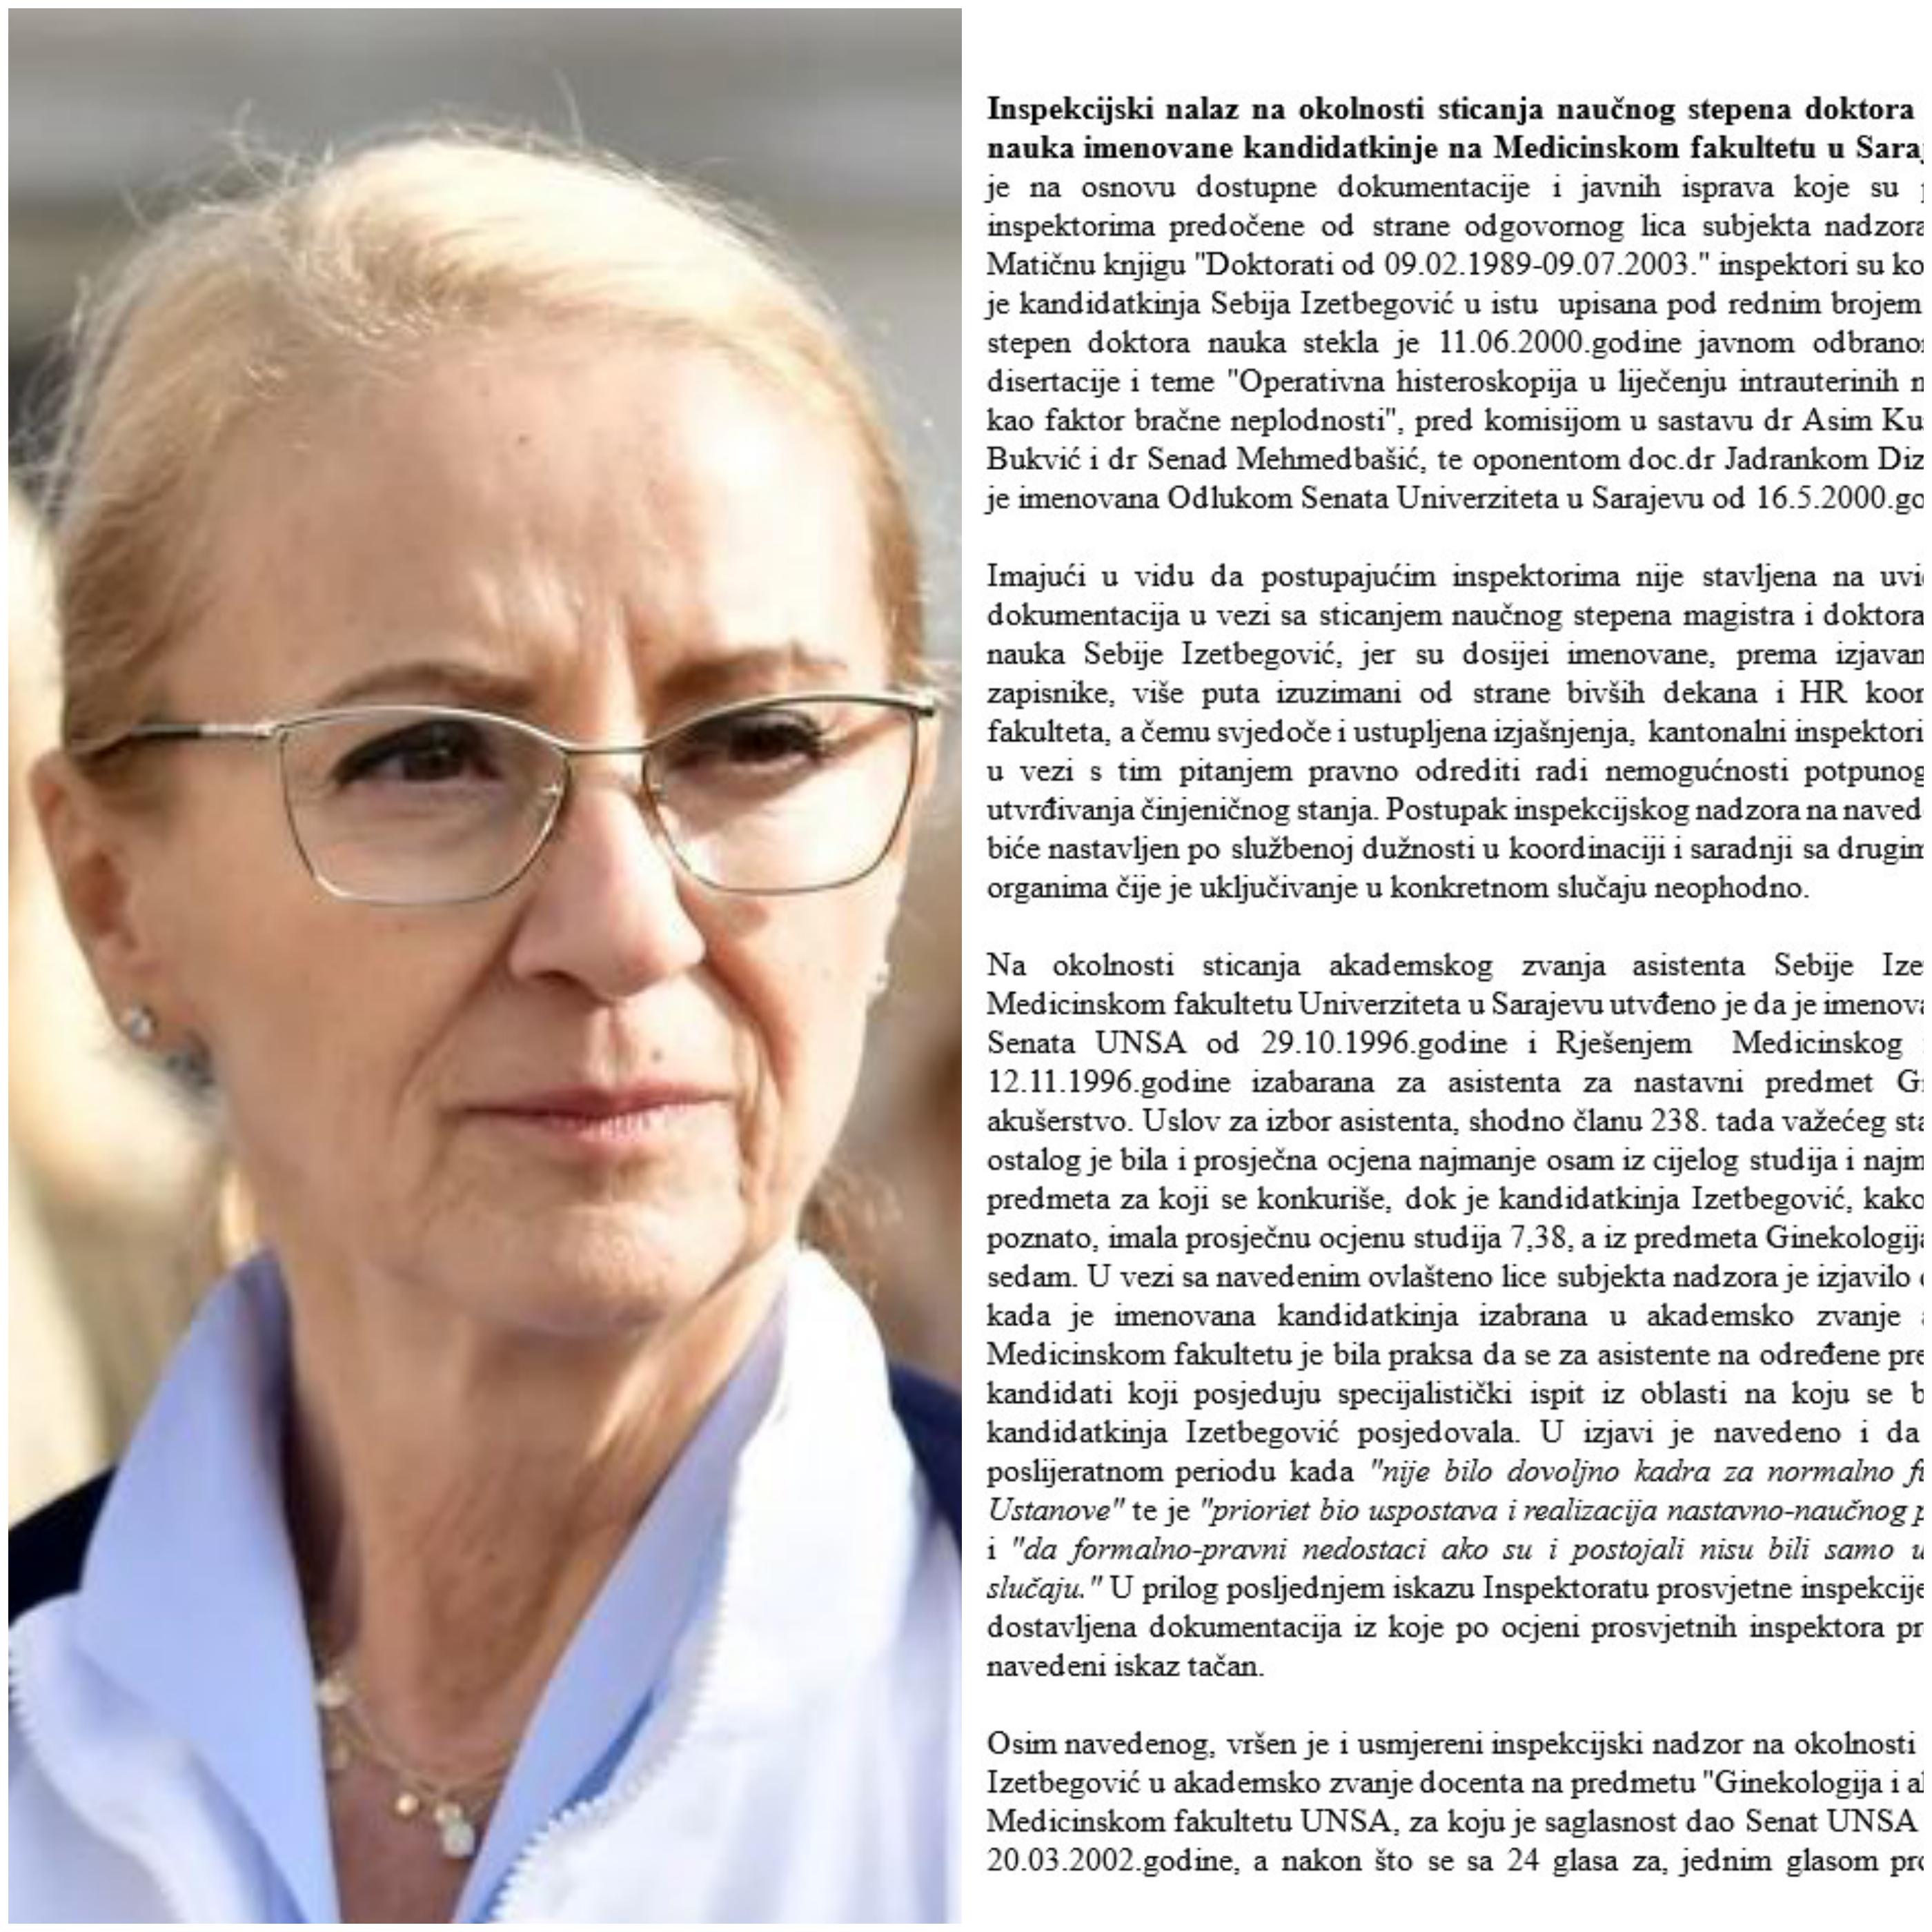 Inspekcija okončala provjeru: Sebija Izetbegović kao dokaz školovanja u Zagrebu ima samo kopiju indeksa